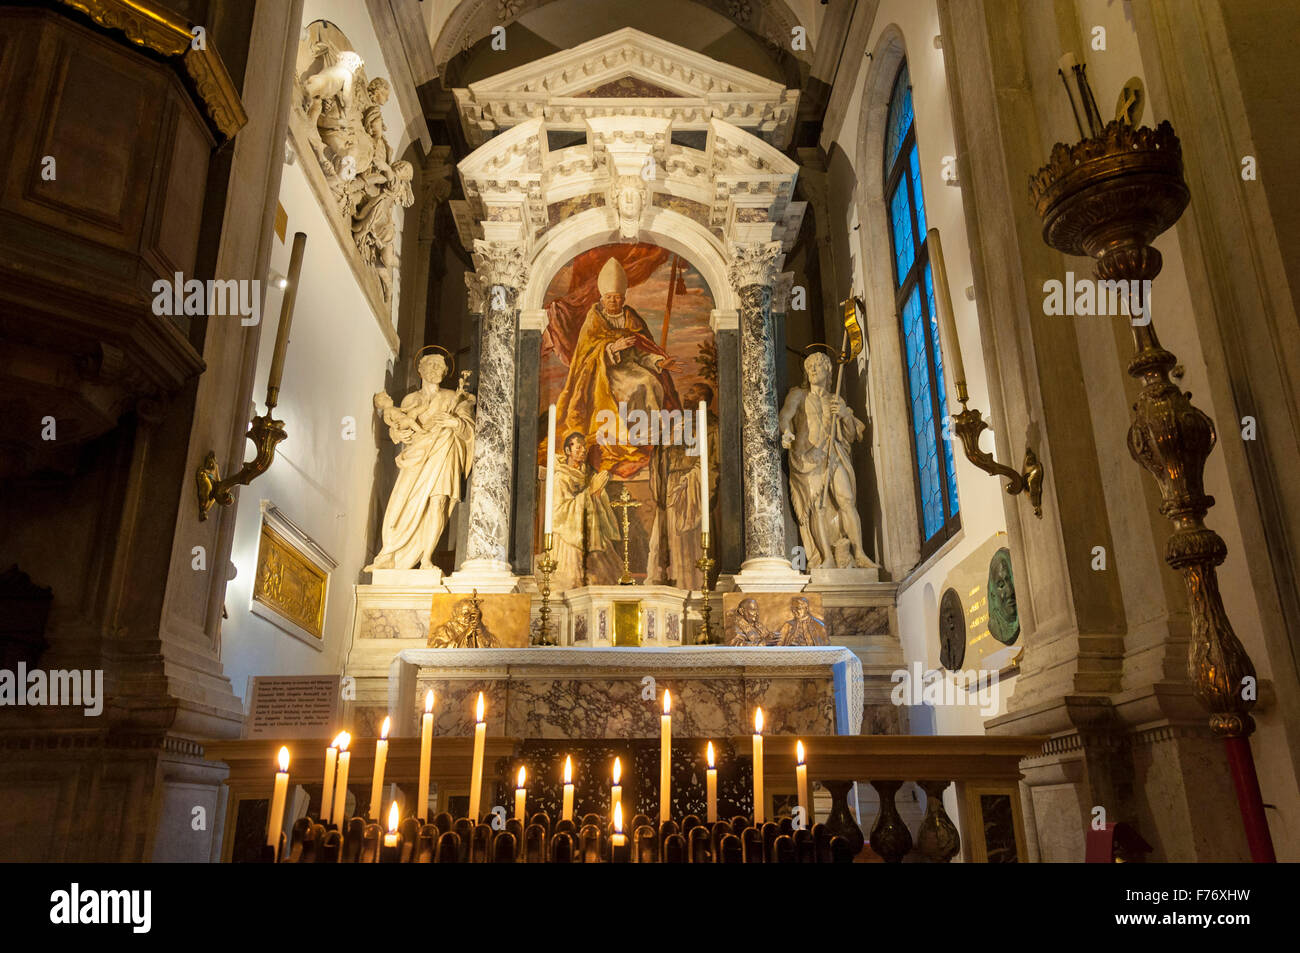 Chiesa di San Rocco chiesa a Venezia, Italia. Immagine papale interno altare Foto Stock